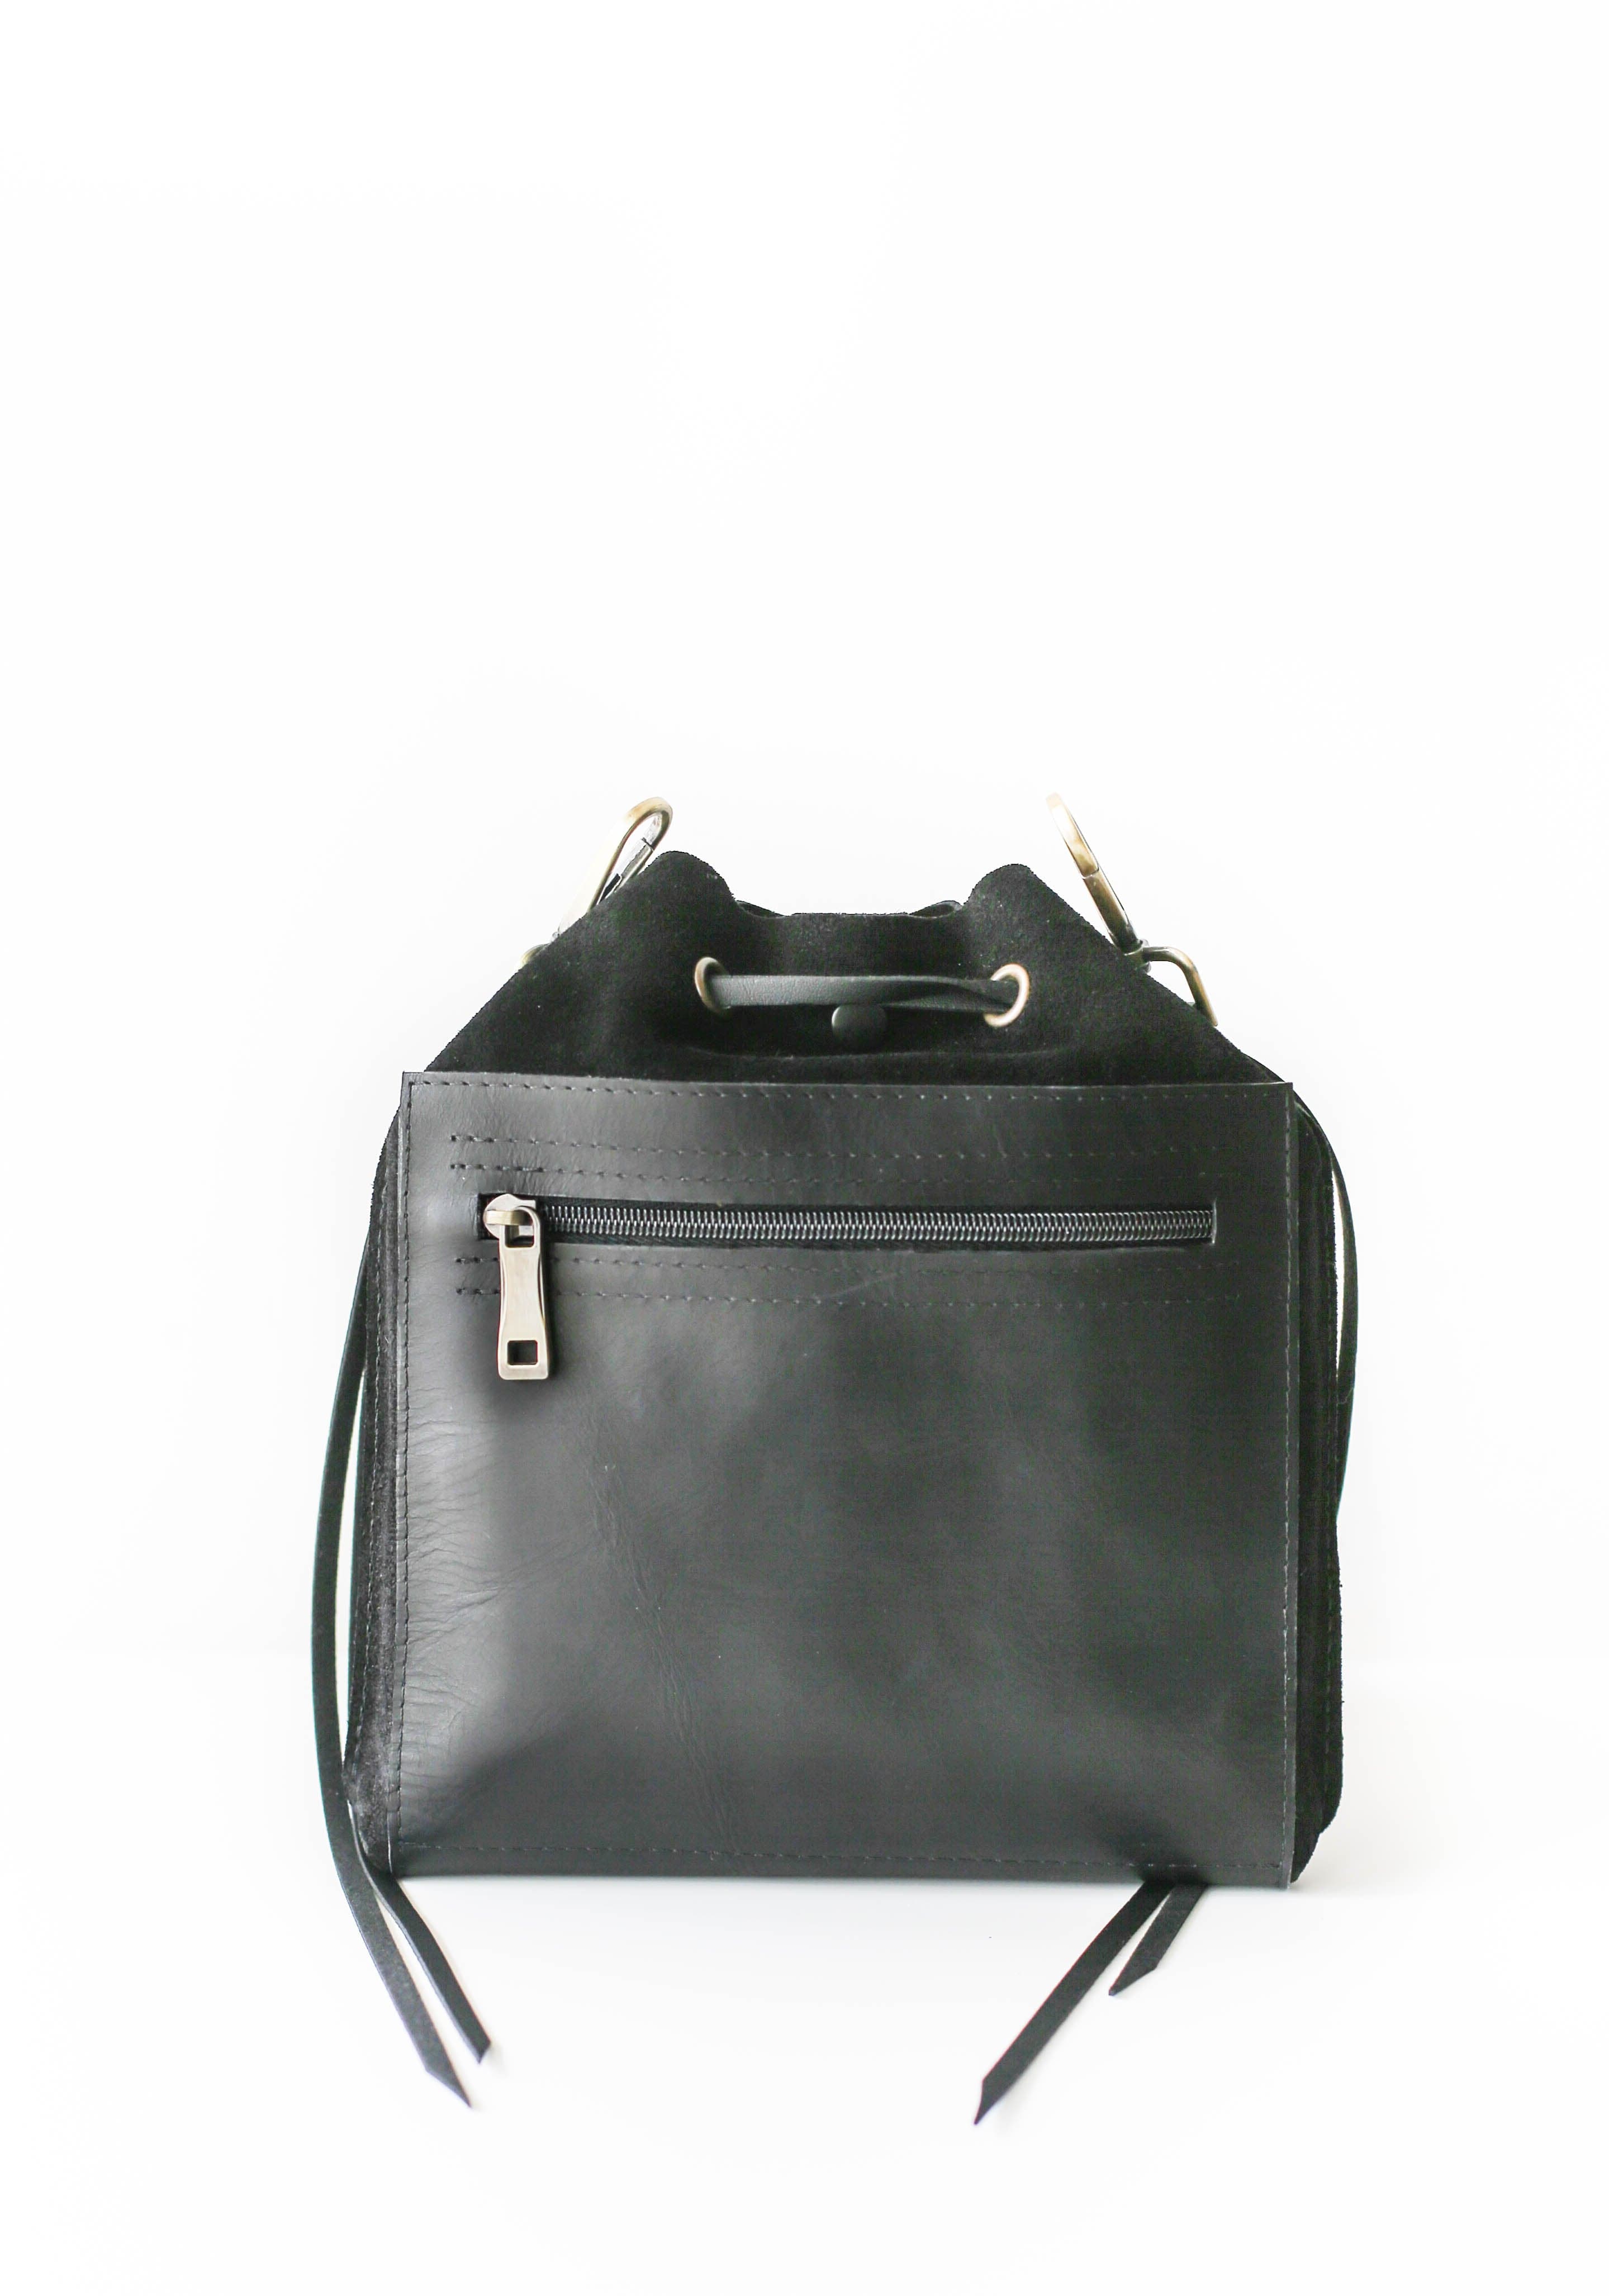 Small Darley Satchel | Small darley satchel, Small black crossbody bag,  Small darley